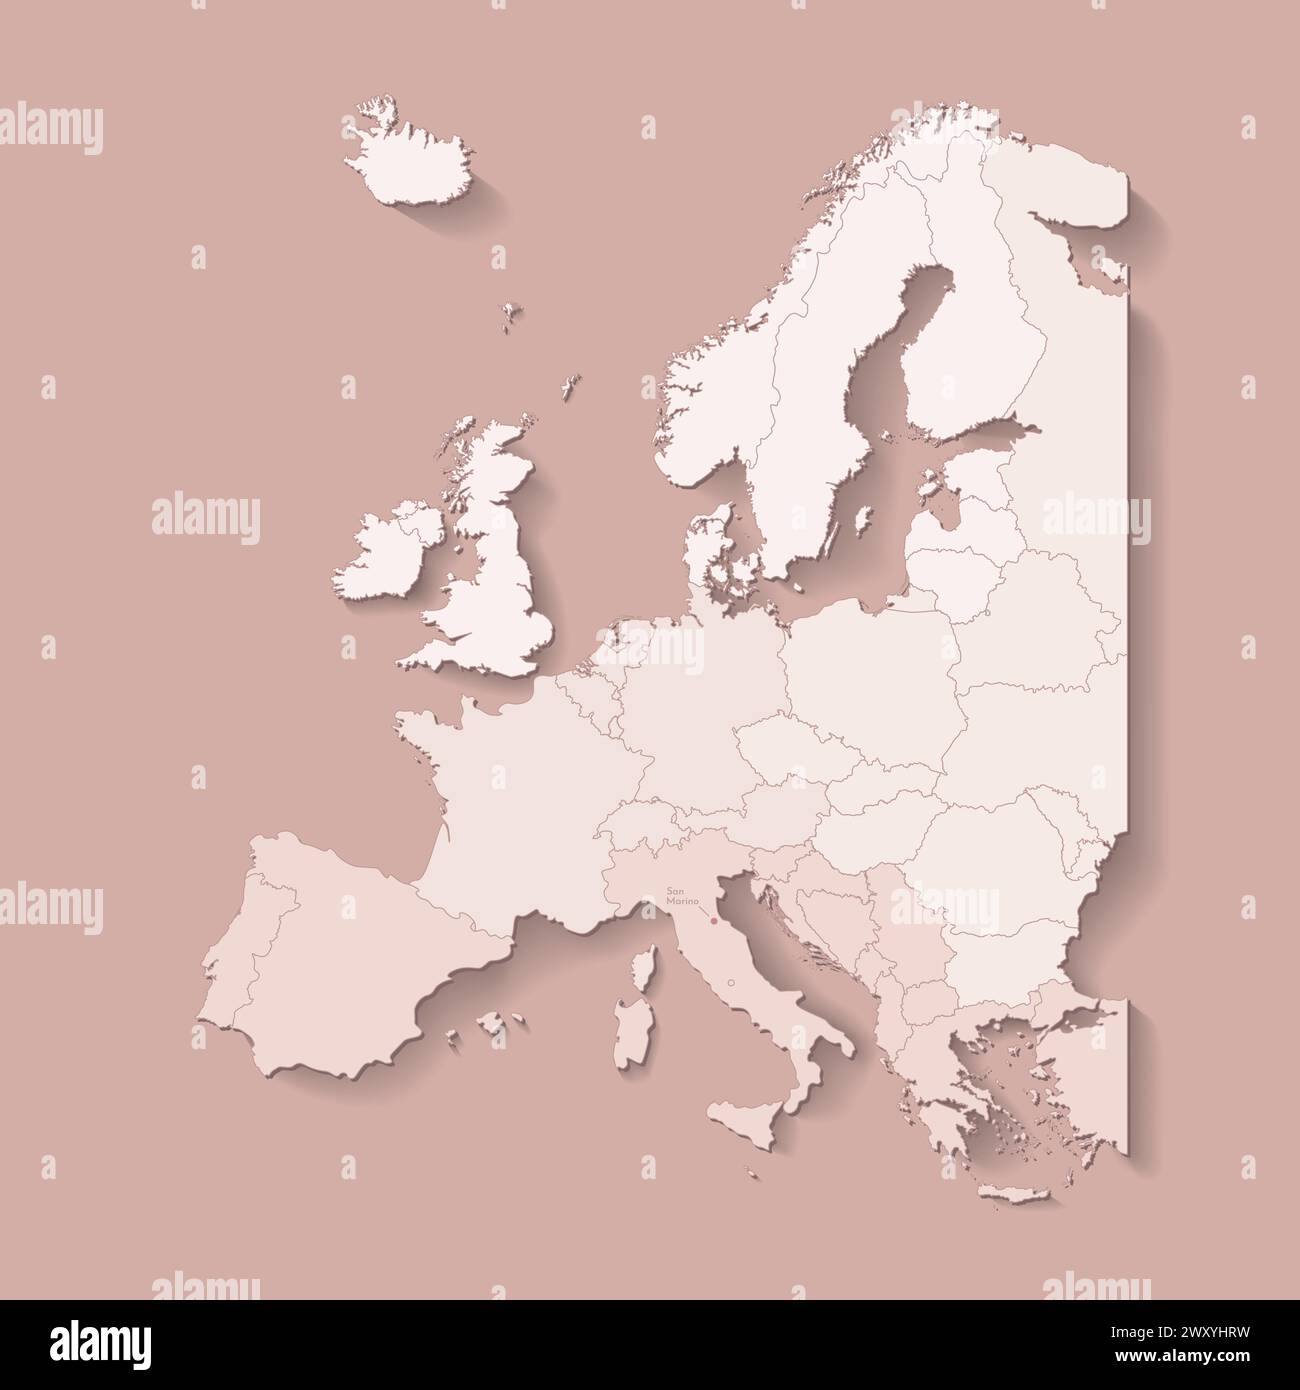 Illustrazione vettoriale con terra europea con confini di stati e paese marcato San Marino. Mappa politica di colore marrone con occidentale, meridionale e così via Illustrazione Vettoriale